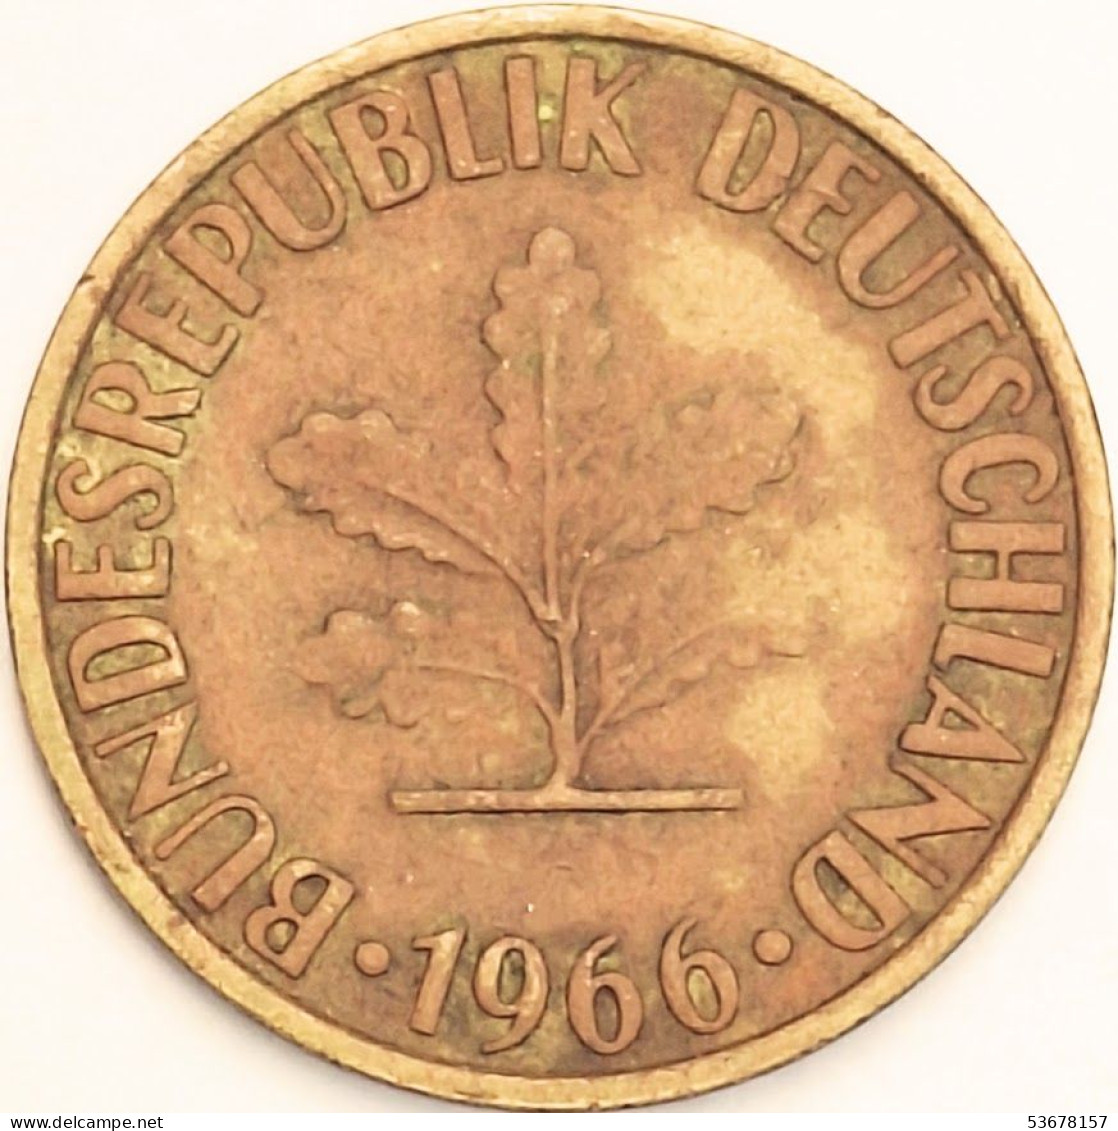 Germany Federal Republic - 10 Pfennig 1966 G, KM# 108 (#4630) - 10 Pfennig